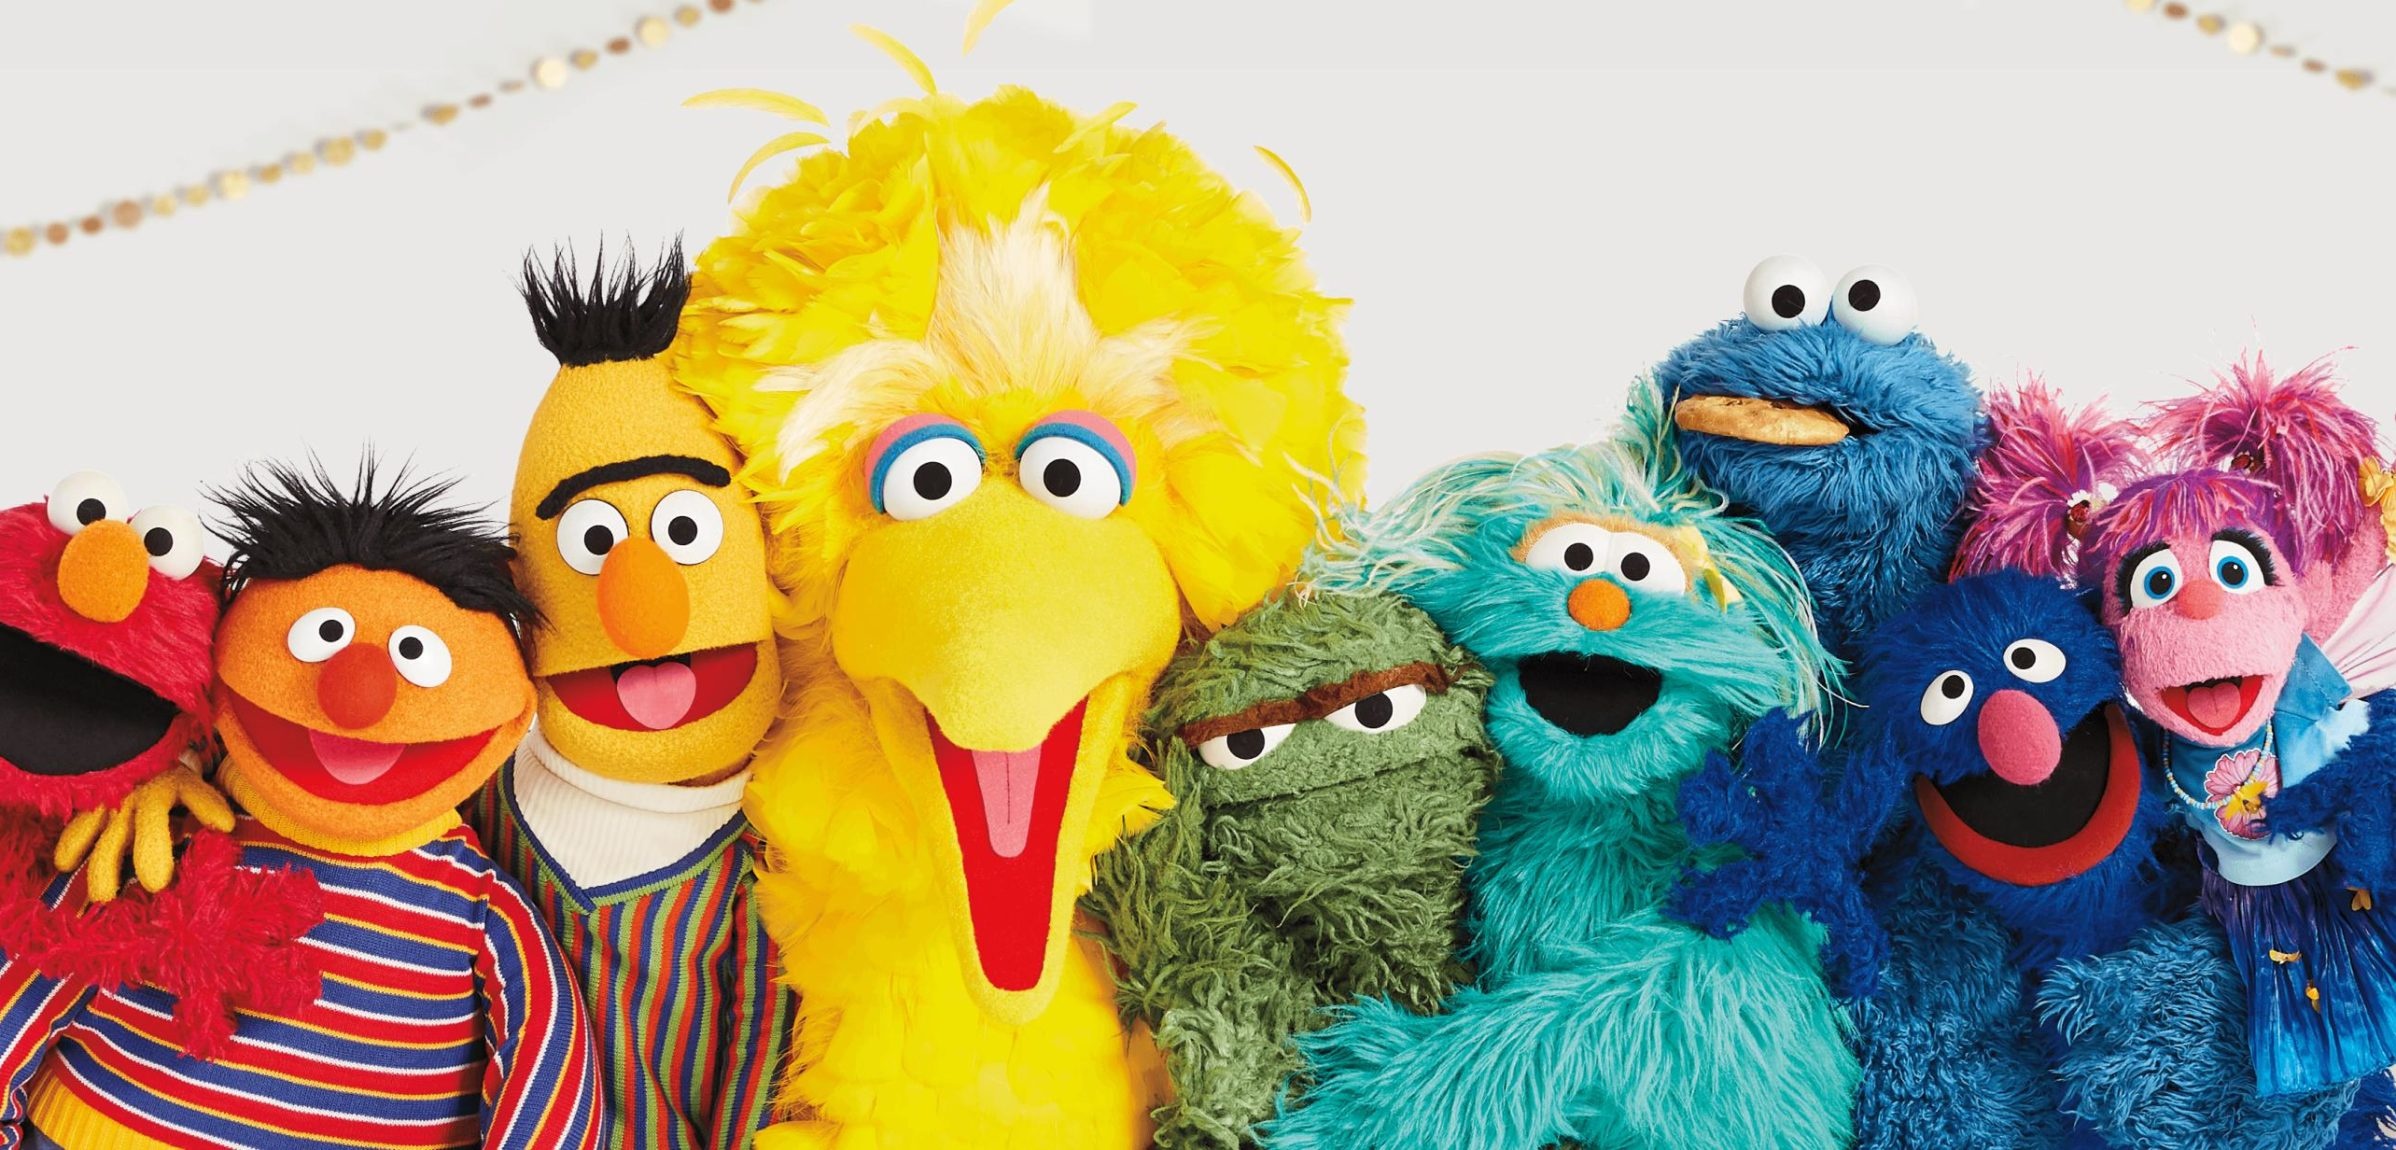 Sesame Street: The Muppets, Elmo, Big Bird, Cookie Monster, Ernie, Bert, Abby Cadabby. 2400x1150 Dual Screen Wallpaper.